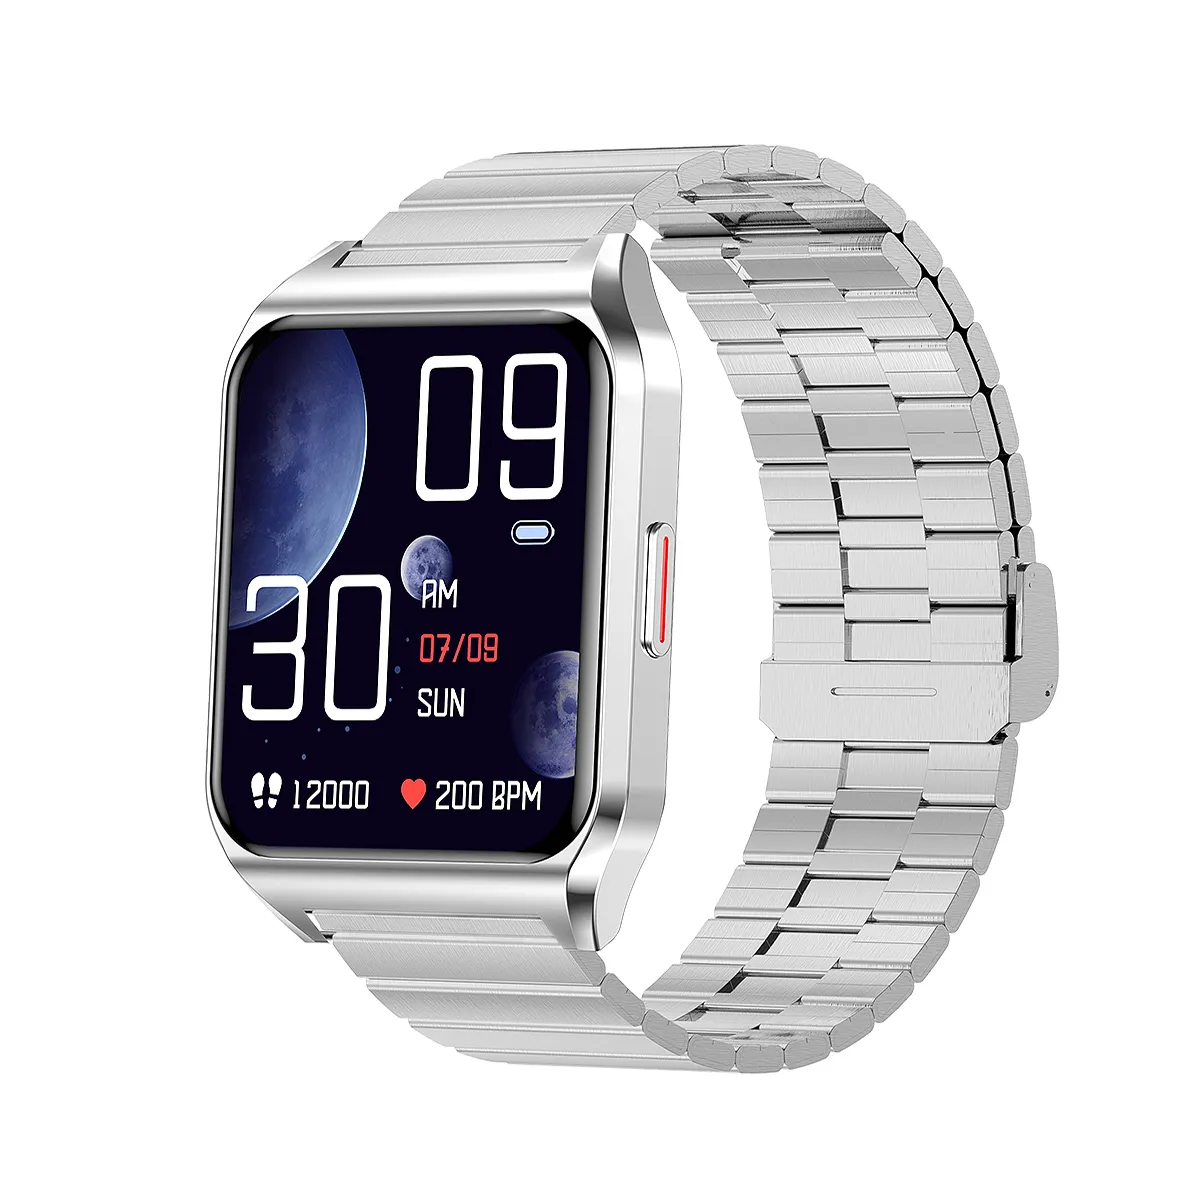 2020 toptan Android kamera Smartwatch bilek cep akıllı saat telefon EAWOS spor akıllı İzle Sim kart yuvası ile